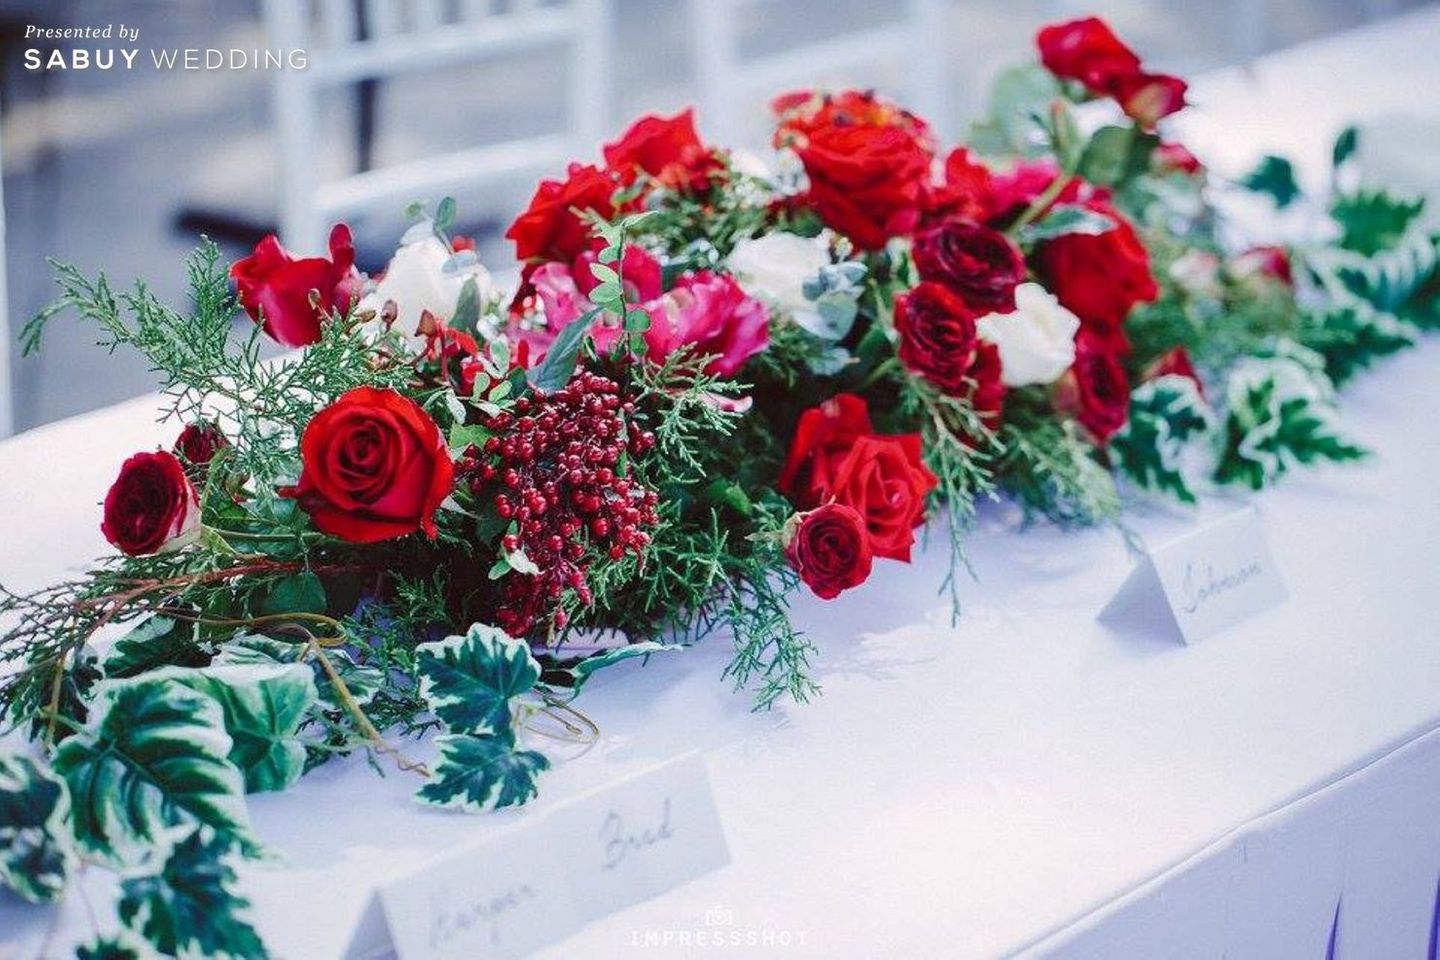 งานแต่งงาน,Bangkok Garden Studio,Primmrose Wedding Planner,ตกแต่งงานแต่ง,จัดดอกไม้งานแต่ง,โต๊ะลงทะเบียน งานดอกไม้ธีมแดง เทรนด์แรงของบ่าวสาวยุคใหม่ by Primmrose Wedding Planner